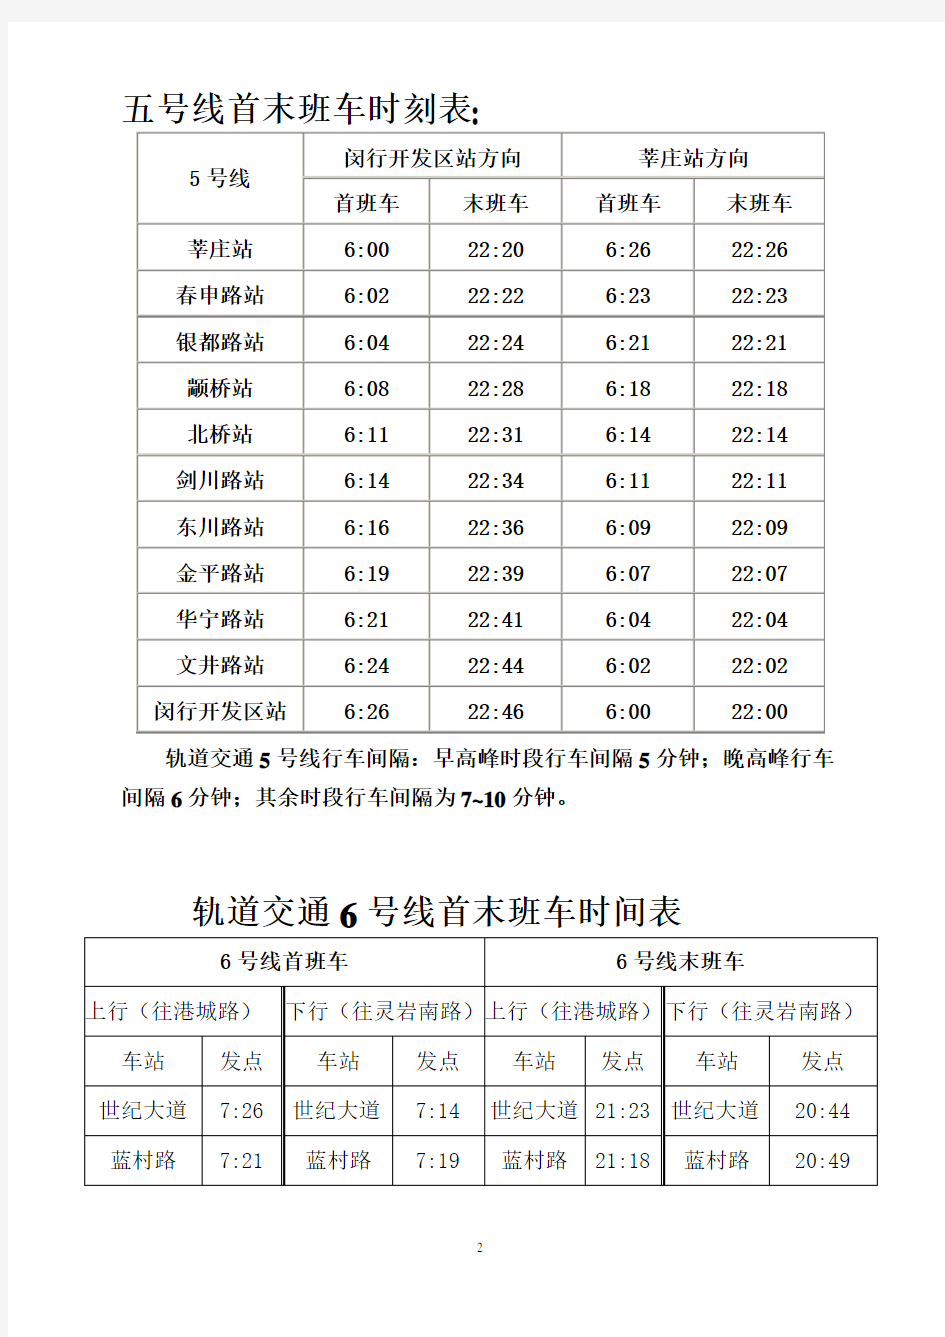 上海地铁运营时刻表